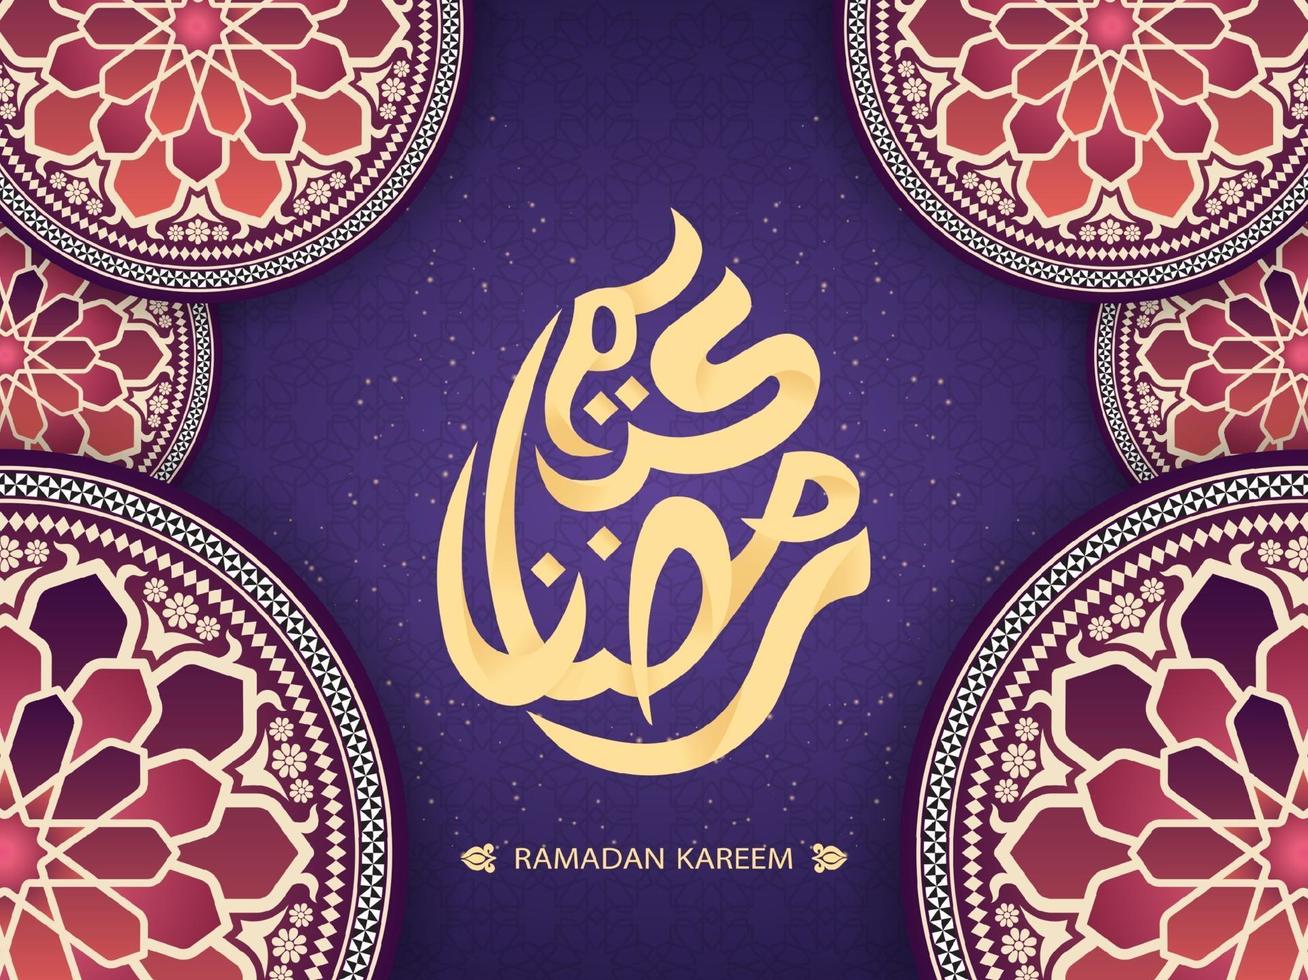 ramadan kareem gratulationskort dekorerad med mosaikplattor vektor